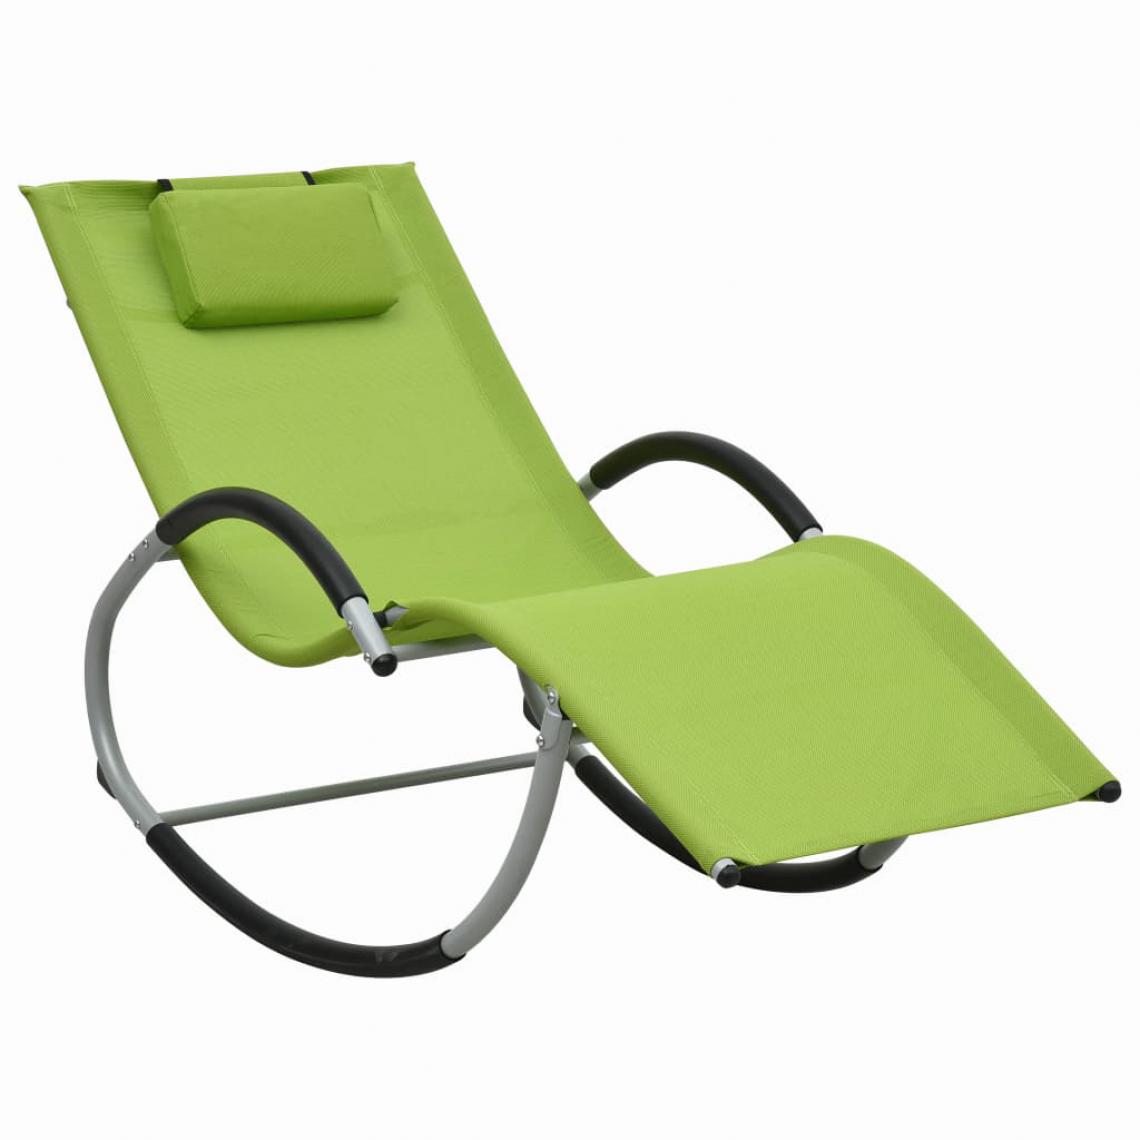 Chunhelife - Chaise longue avec oreiller Vert Textilène - Transats, chaises longues